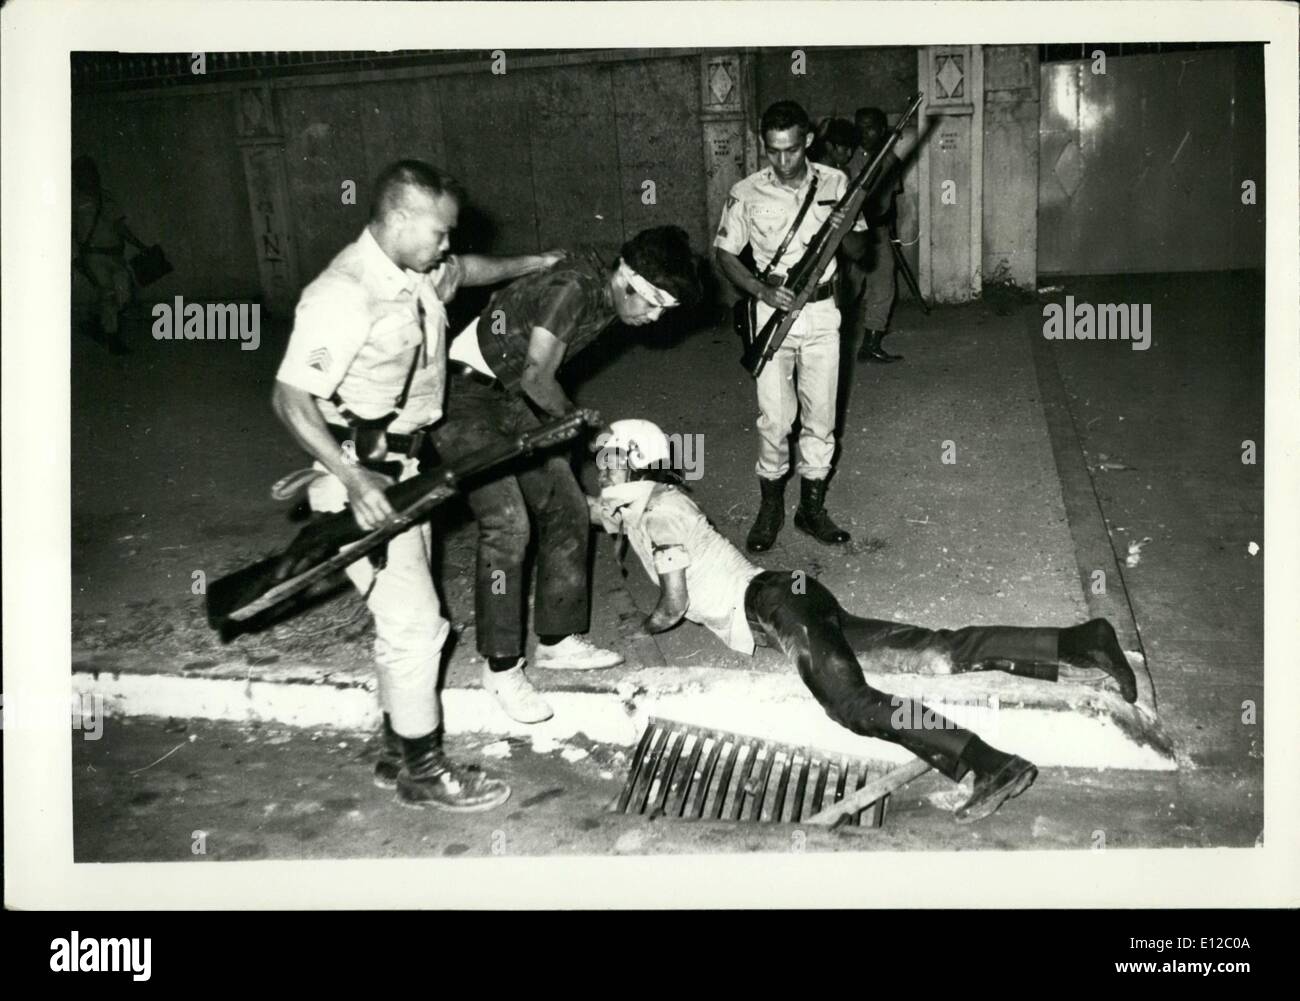 16 dic 2011 - Polizia arrestare gli studenti dopo aver battuto il loro fino dopo leftist pacifica rally contro imperialsm, feudalesimo, ha fatto irruzione nella violenza. 1970 Foto Stock